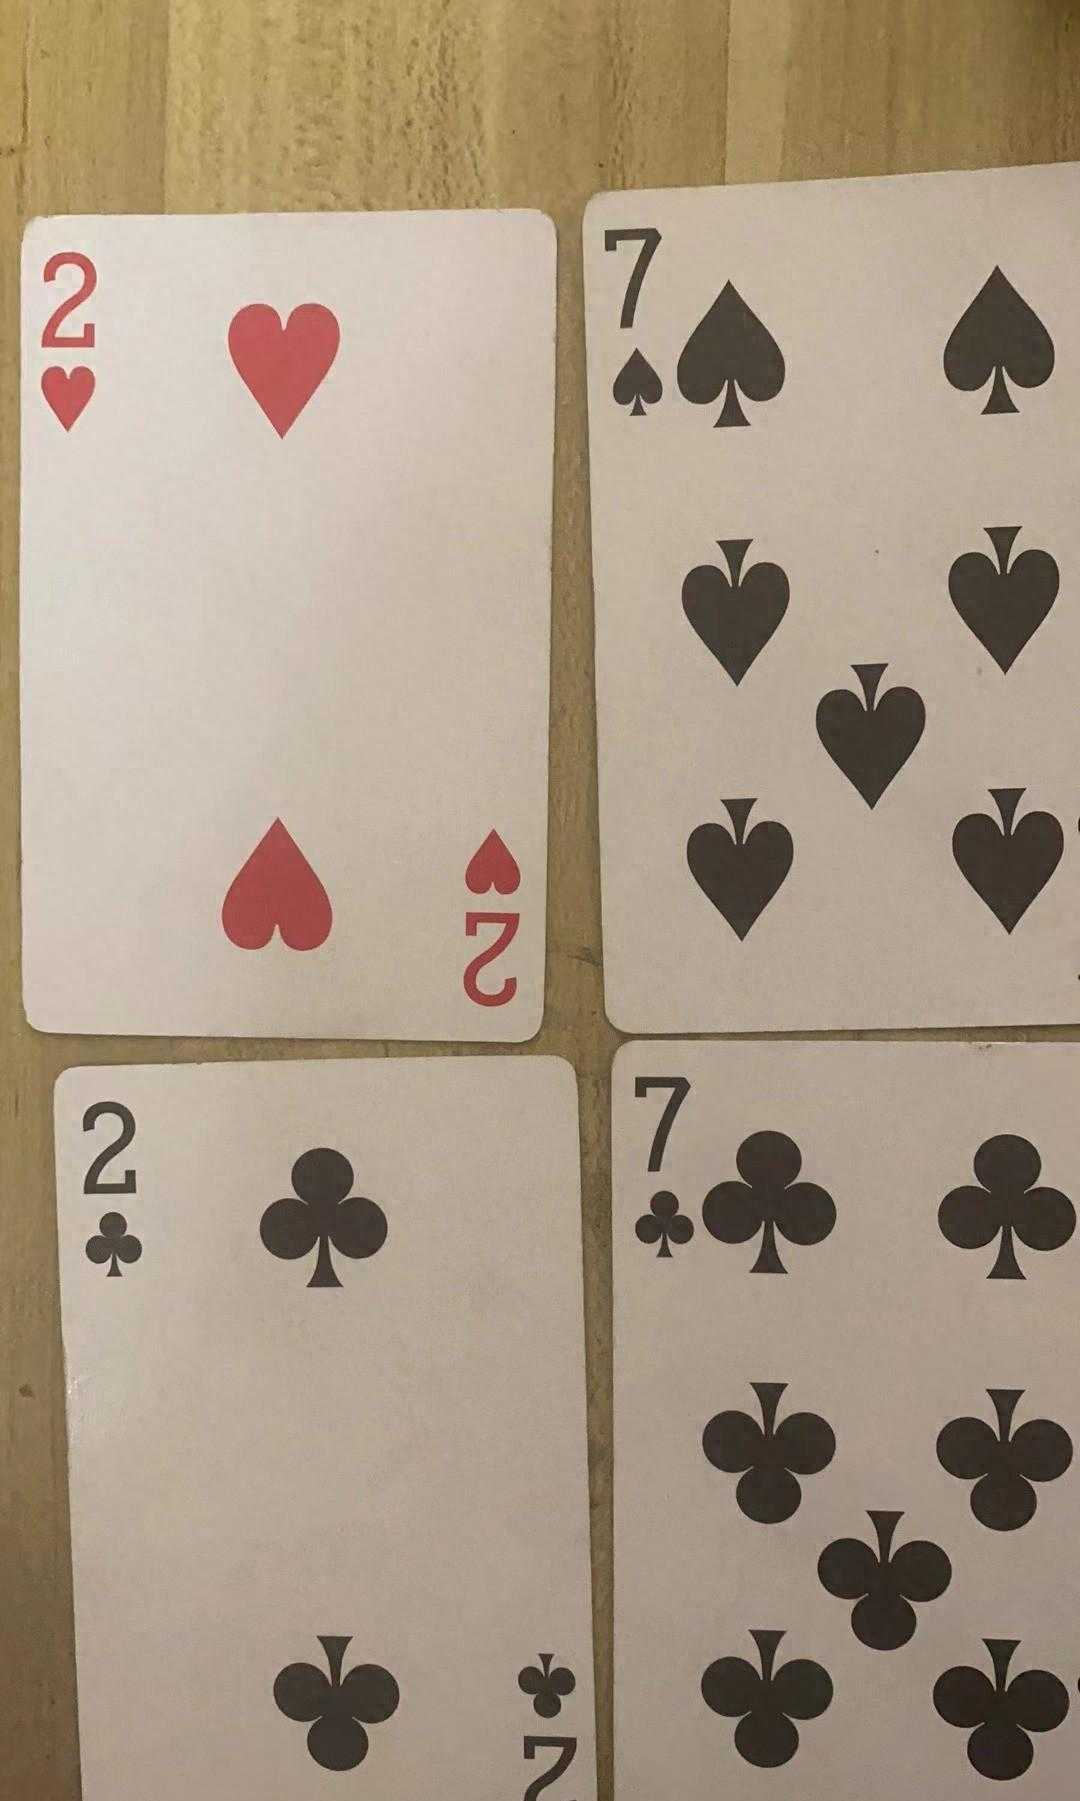 巧算24点游戏，四张牌都是十及以下的牌没有花牌系列...